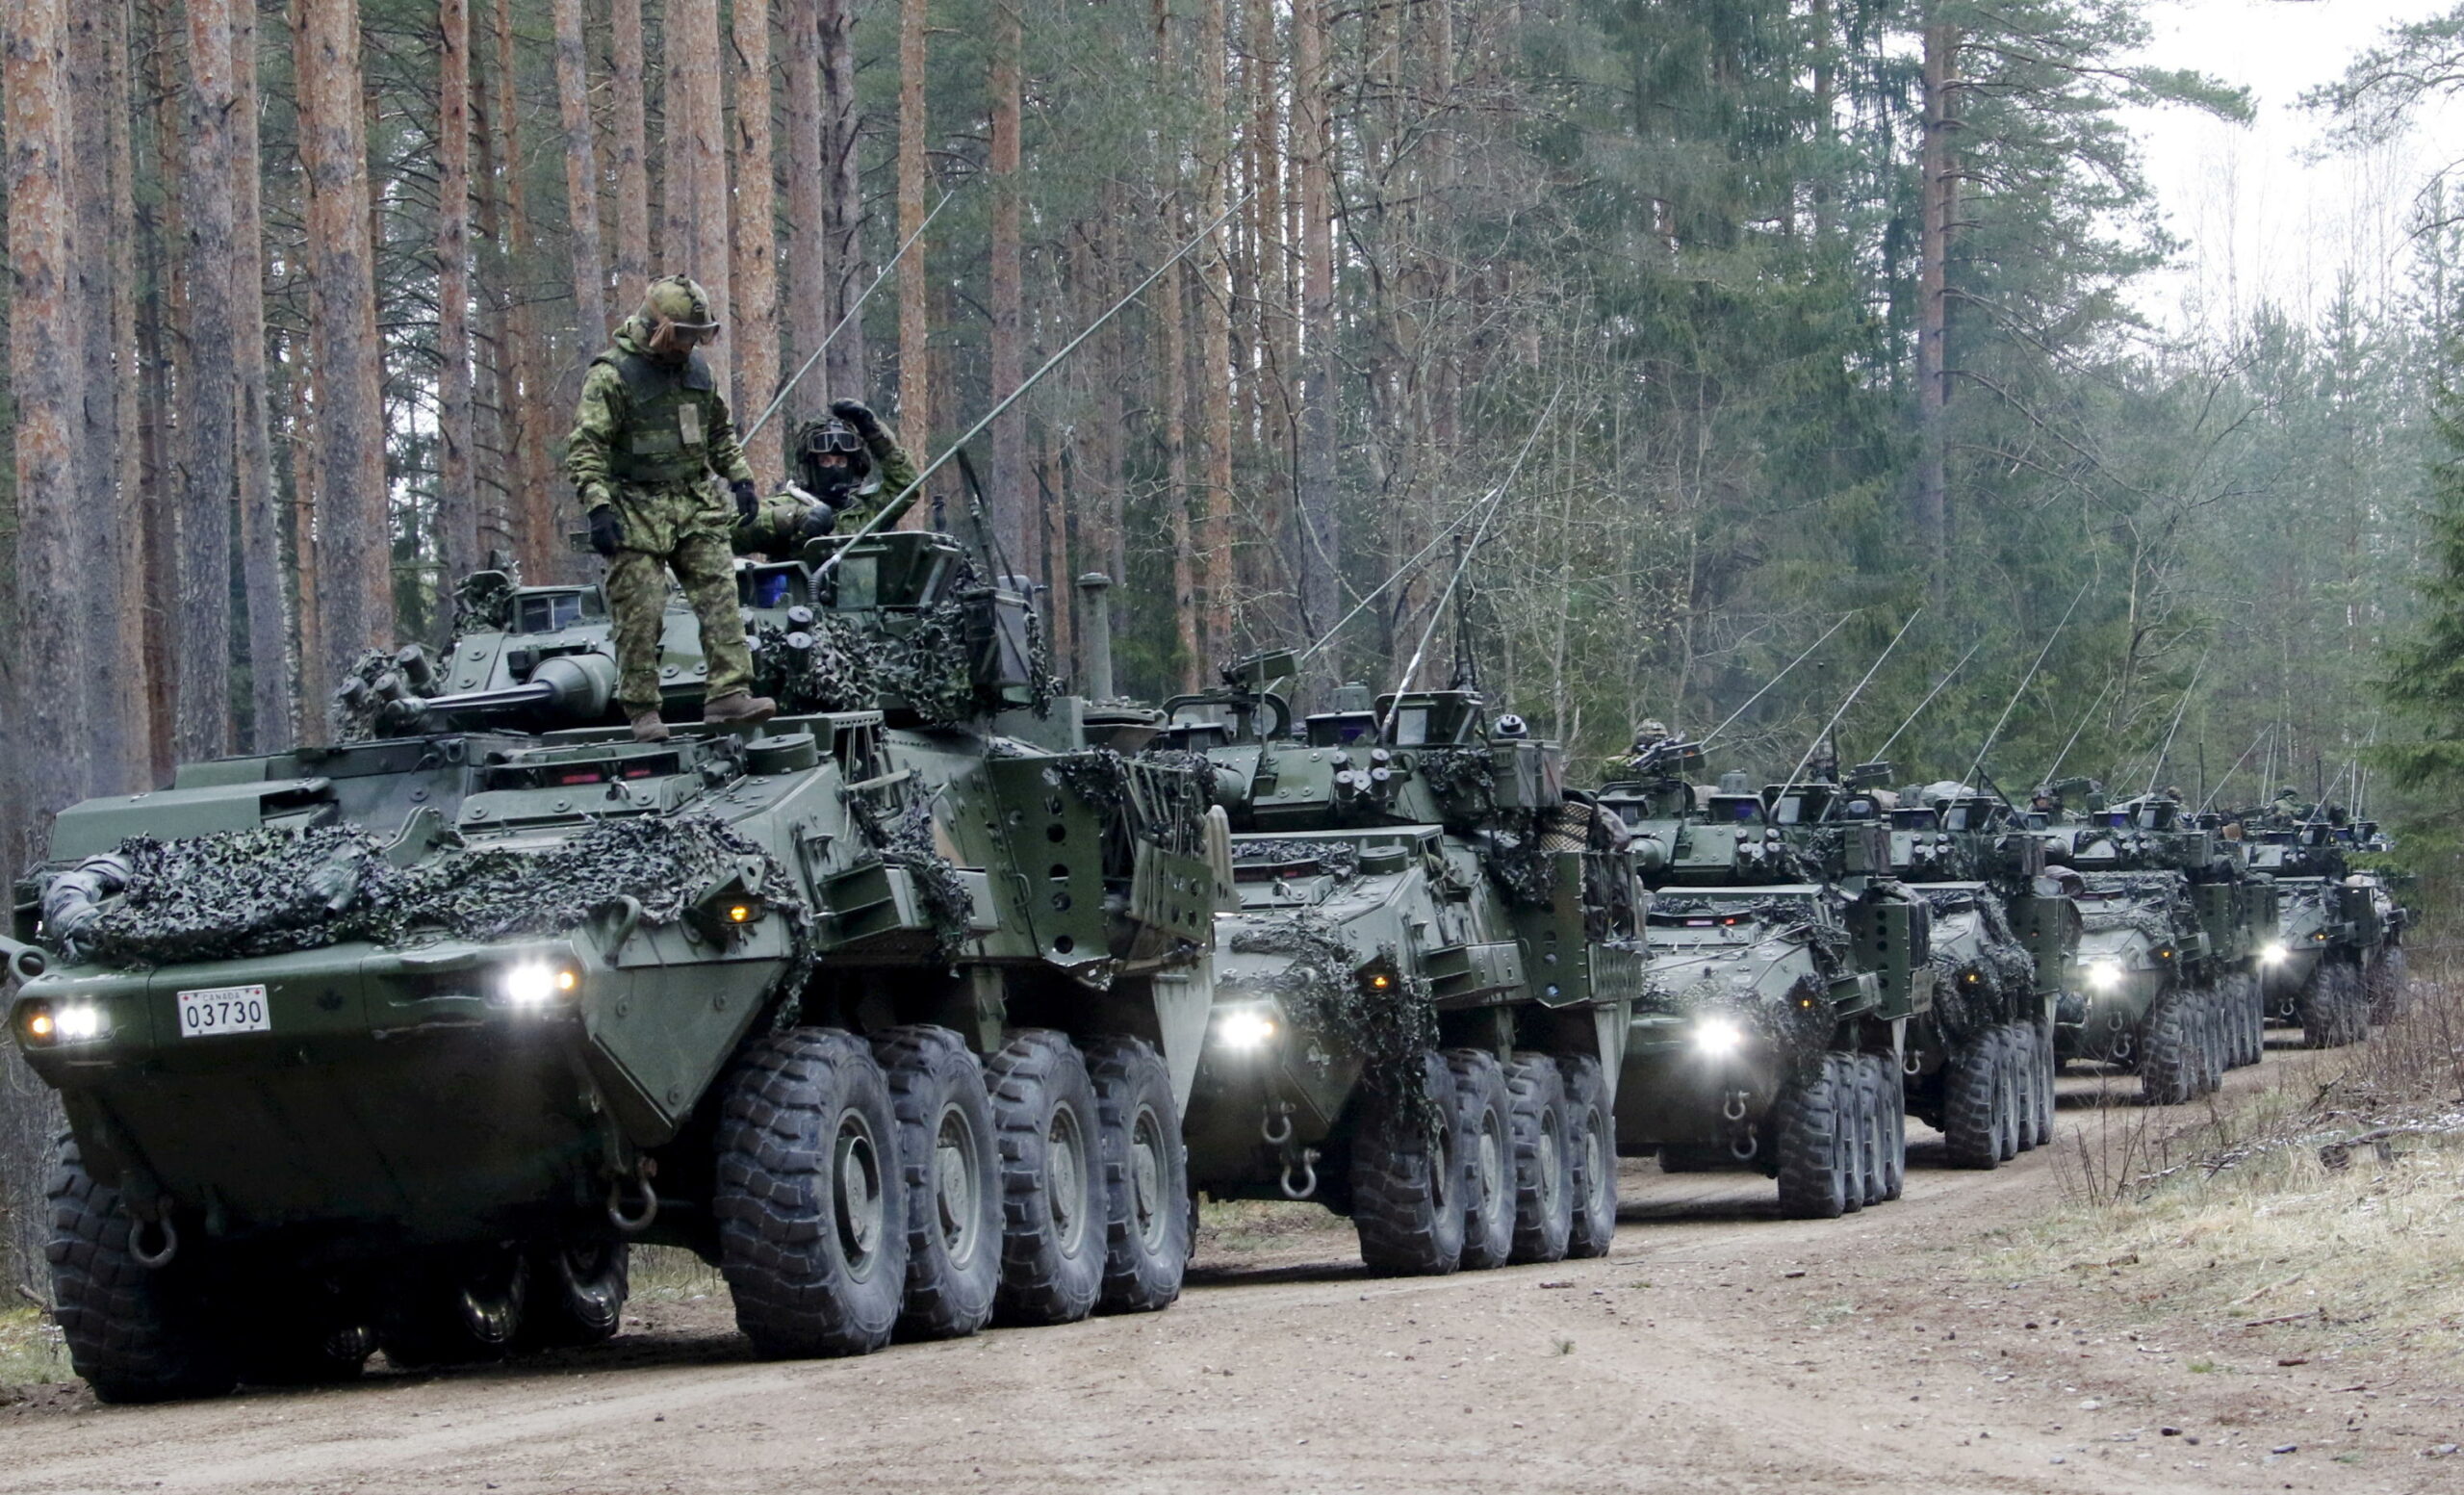 Veicoli militari della Nato durante l'edizione 2023 della "Steadfast Defender", in Lettonia.